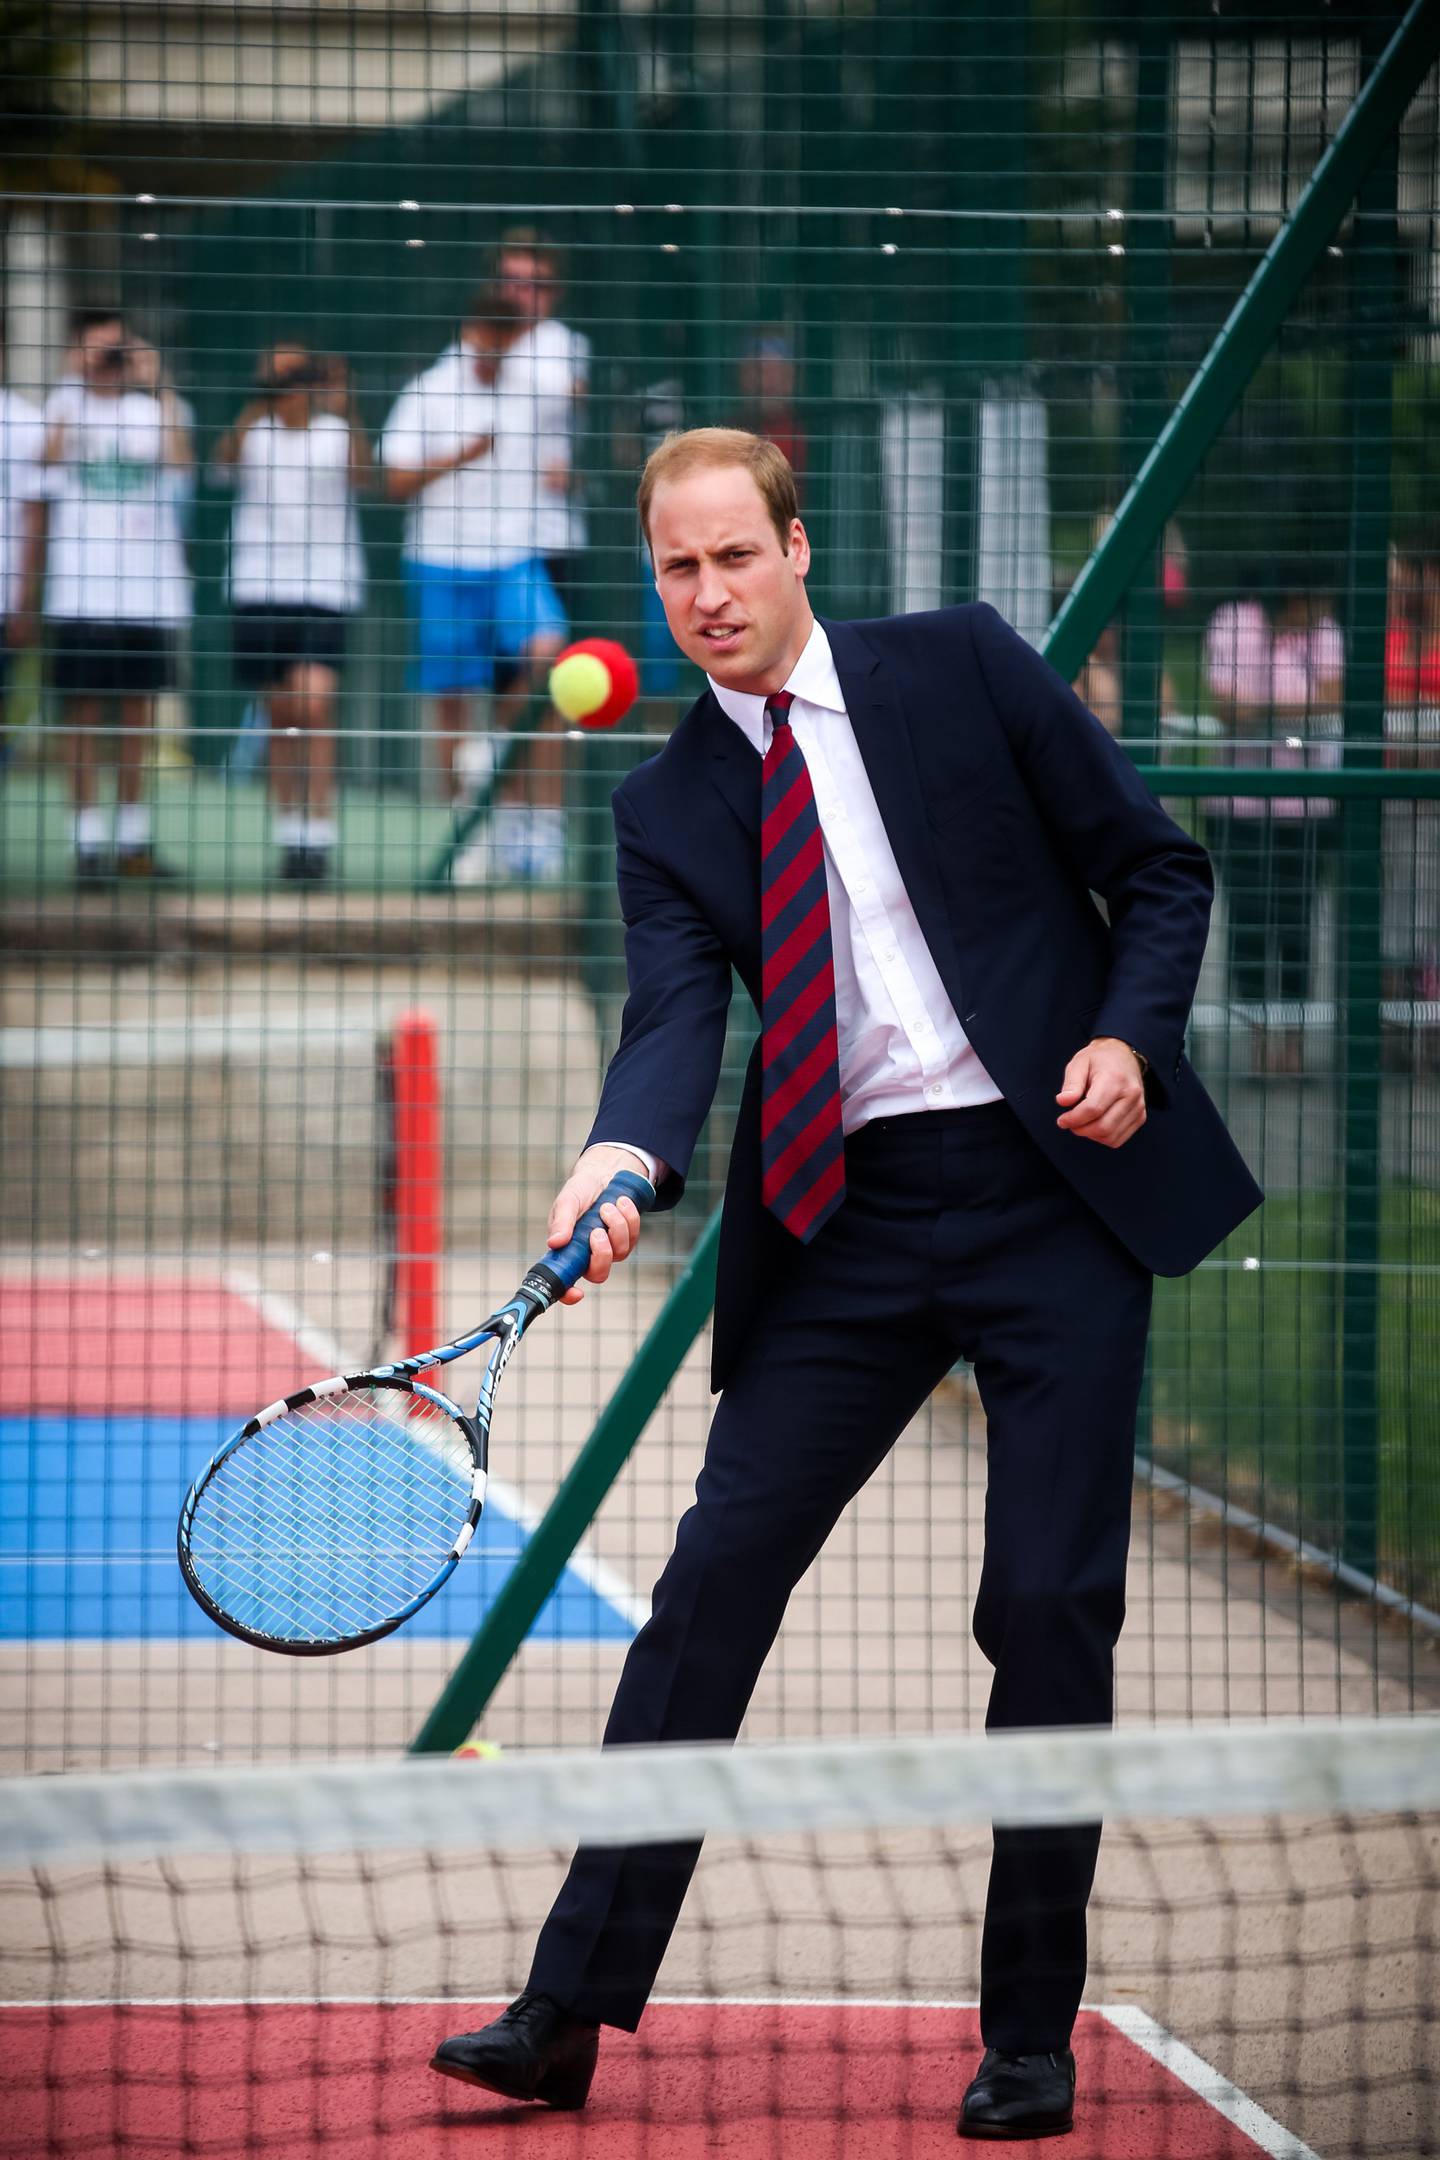 El príncipe William es uno de los zurdos de la realeza británica, aunque juega tenis con la derecha.